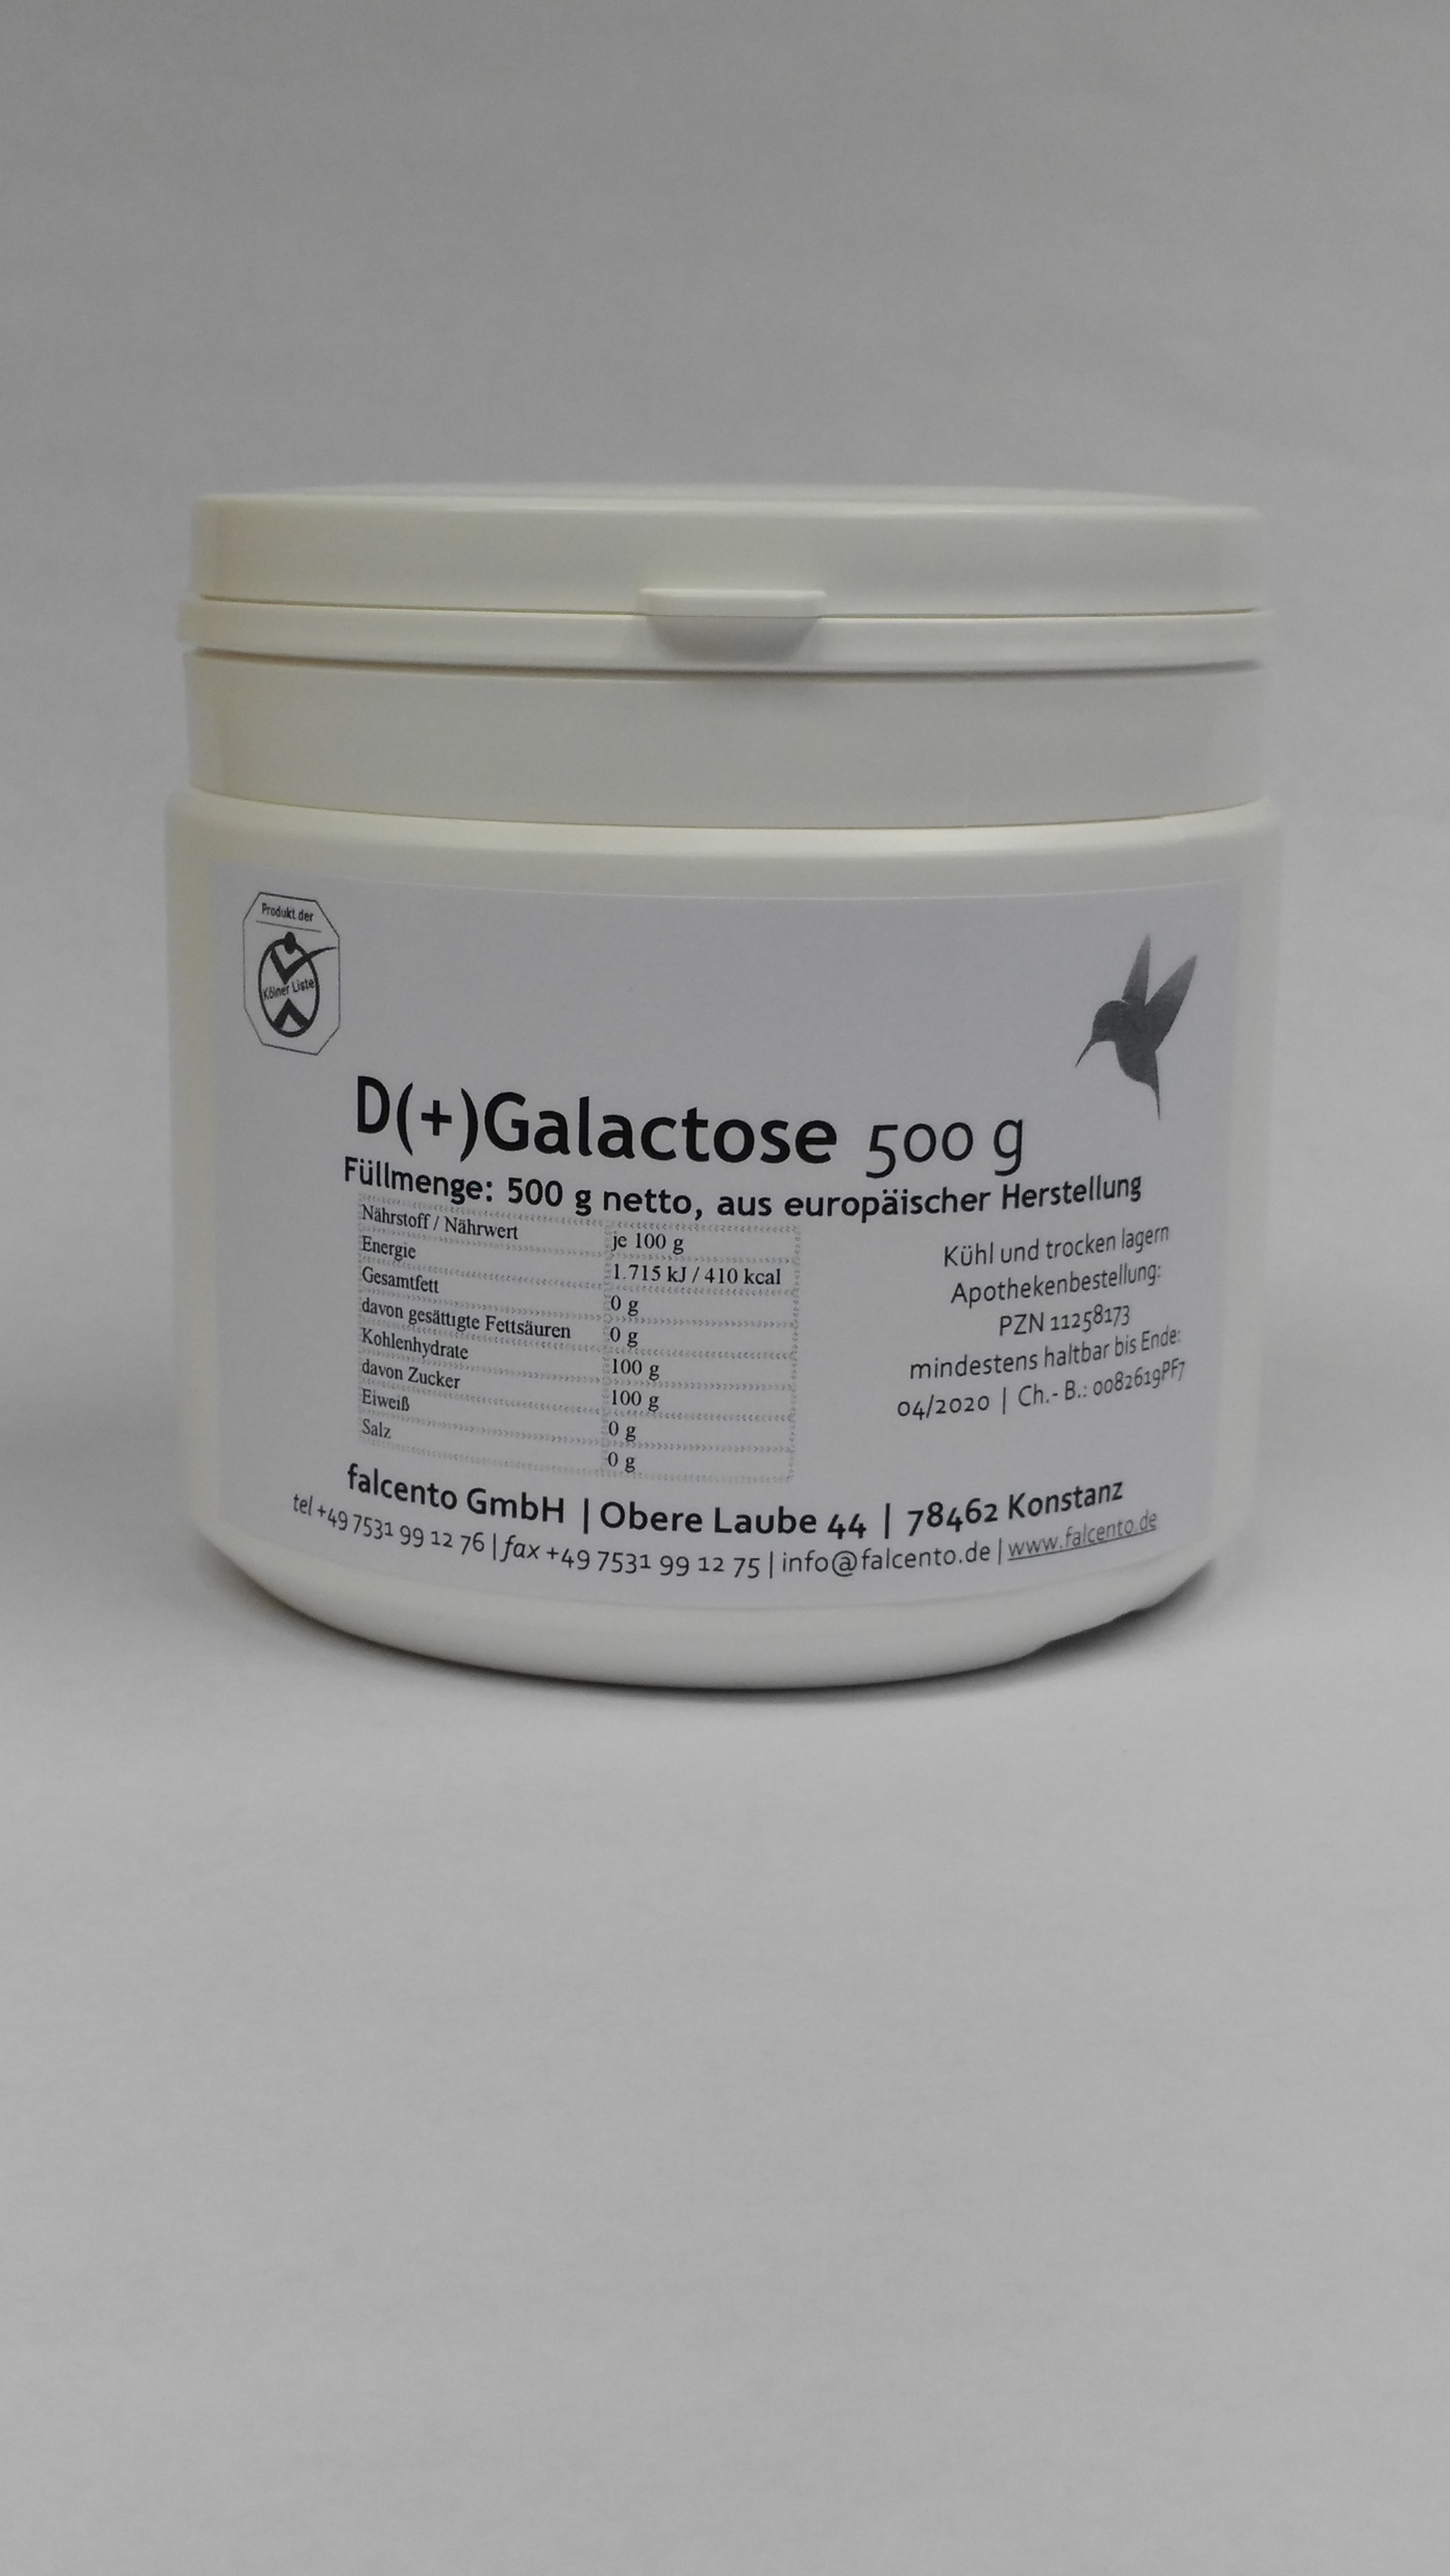 D(+)Galactose 500 g